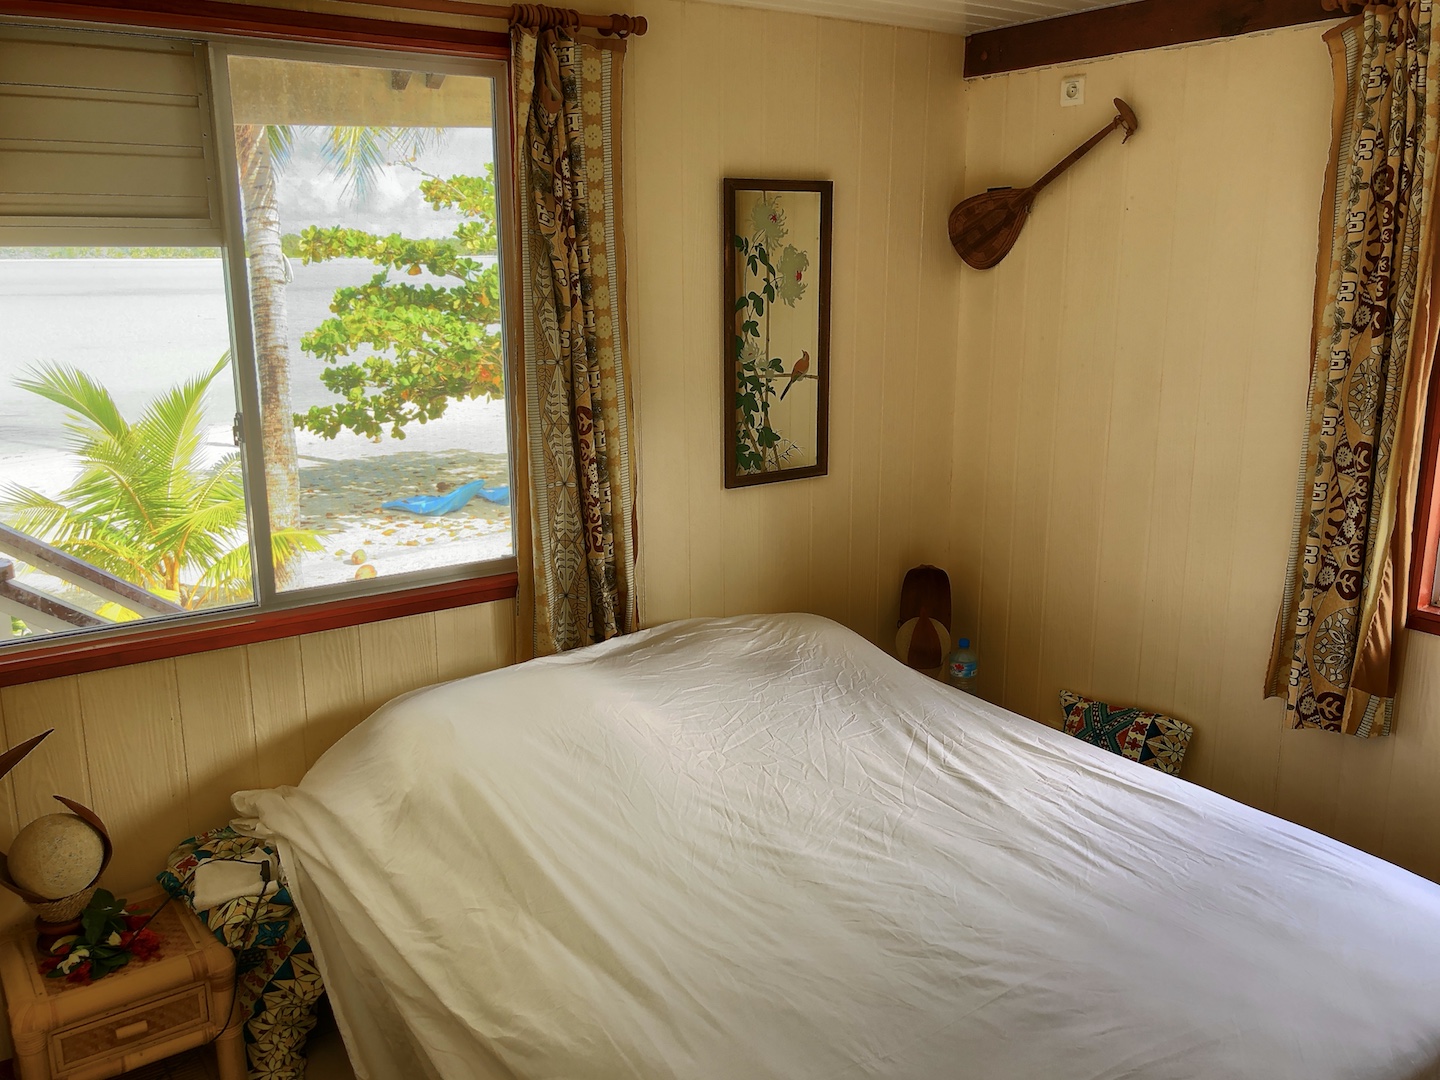 Schlafzimmer im Bungalow von der Maupiti Résidence, Maupiti, Südsee